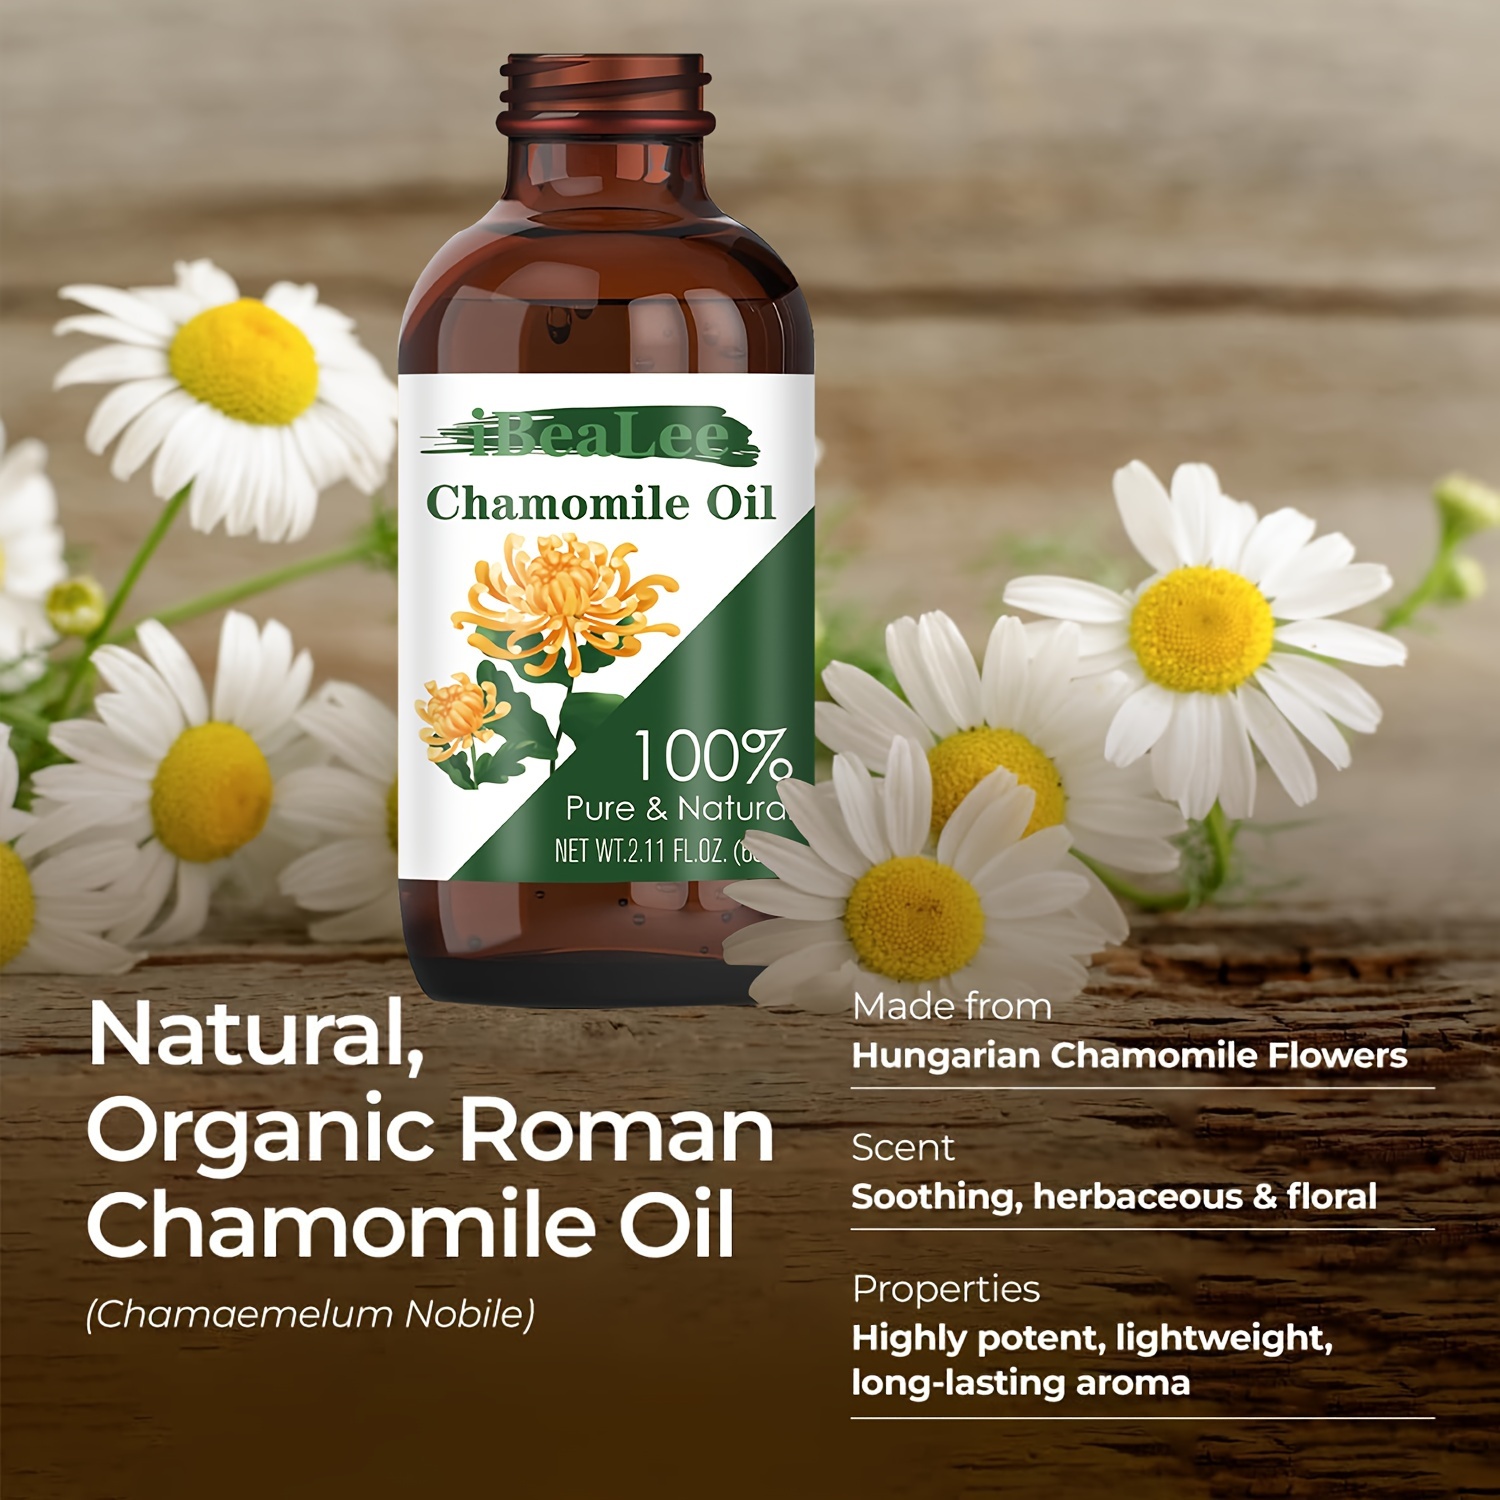 Chamomile Roman 100% Pure Essential Oil